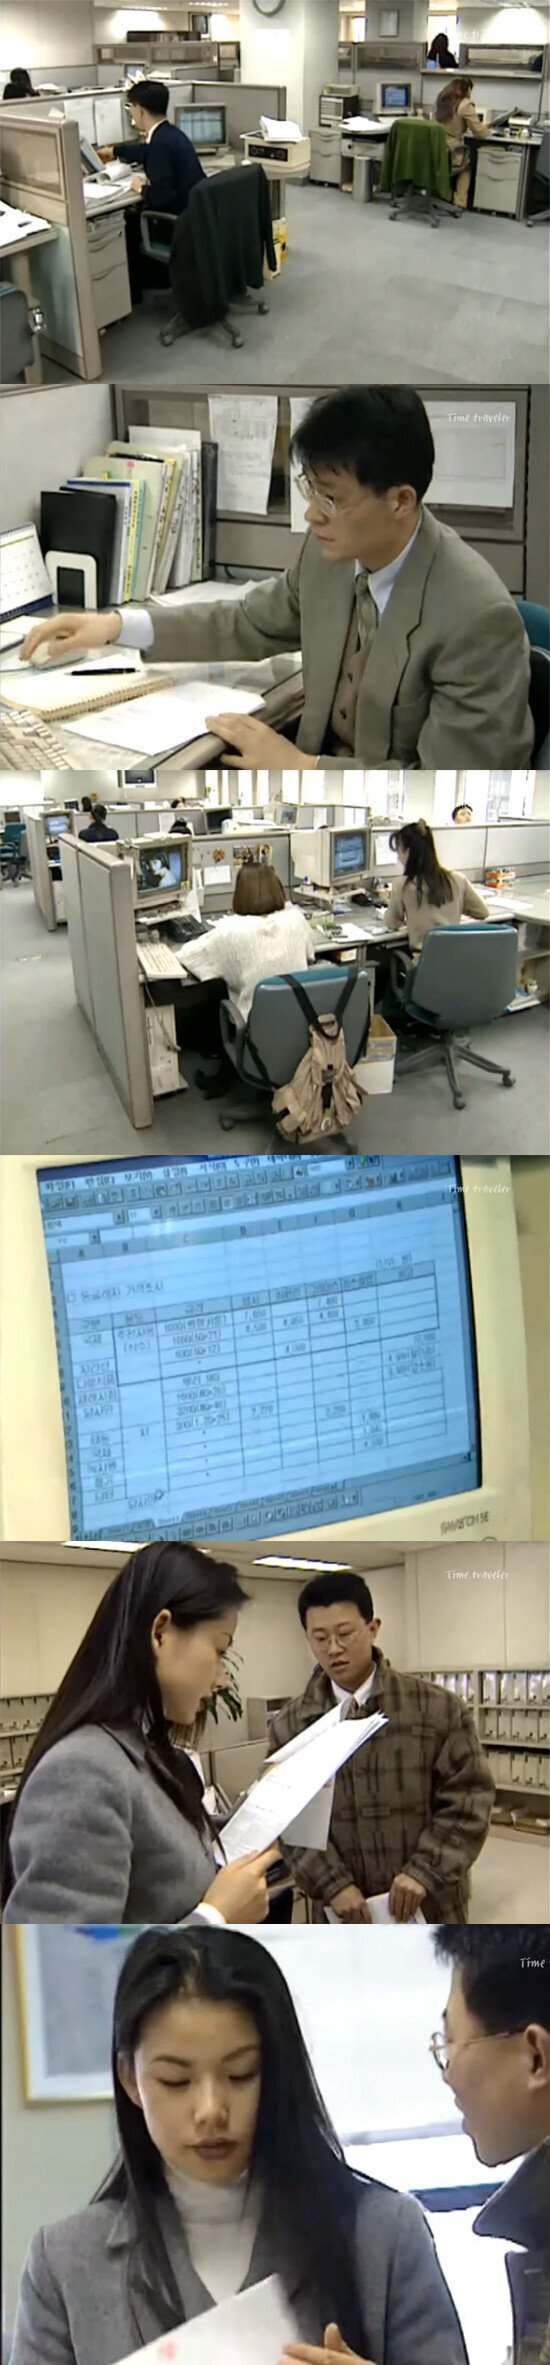 90년대 한국 대기업의 사무실 풍경